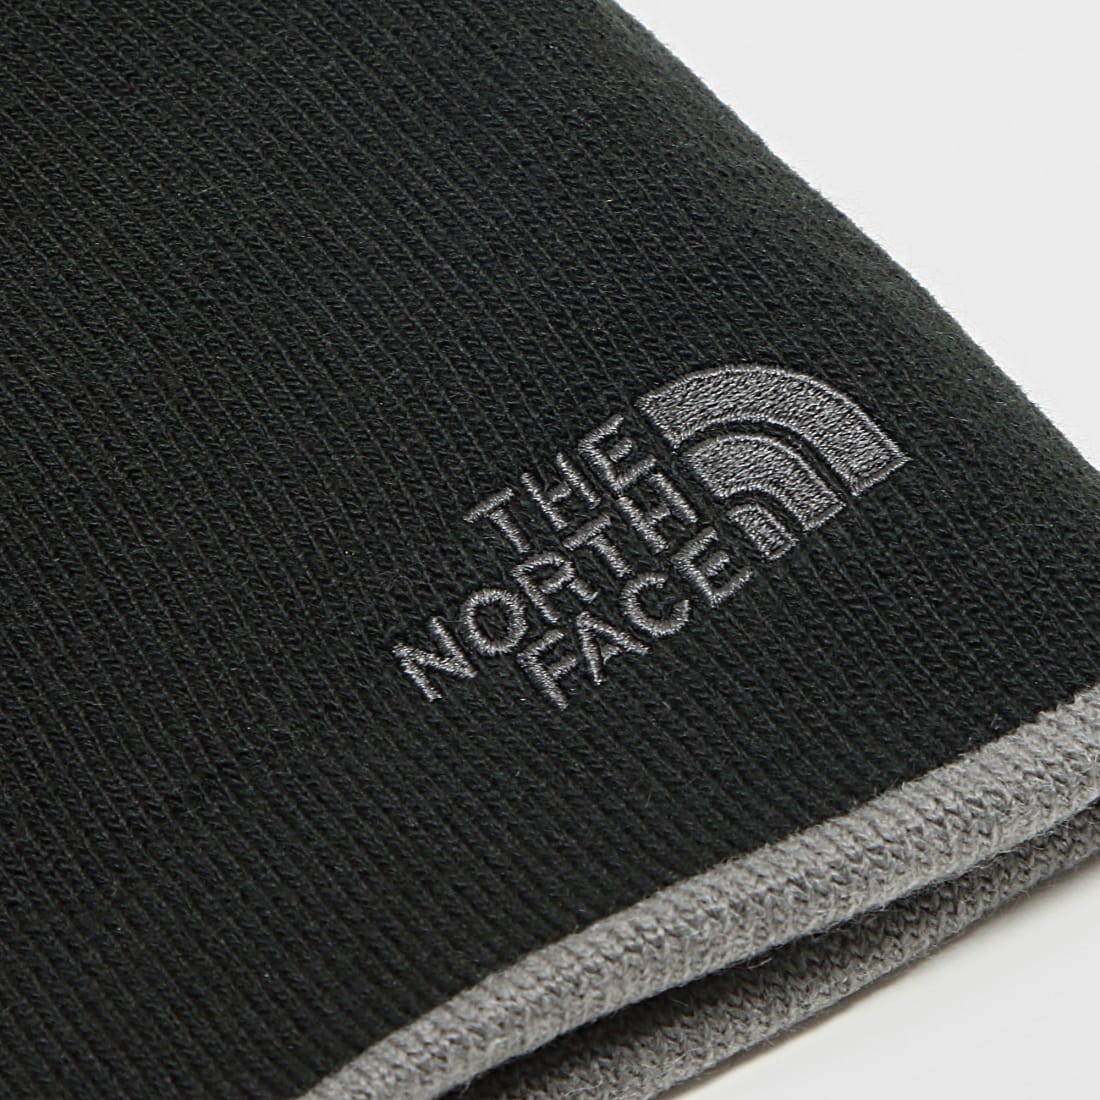 The North Face - Banner - Bonnet réversible - Gris foncé et noir